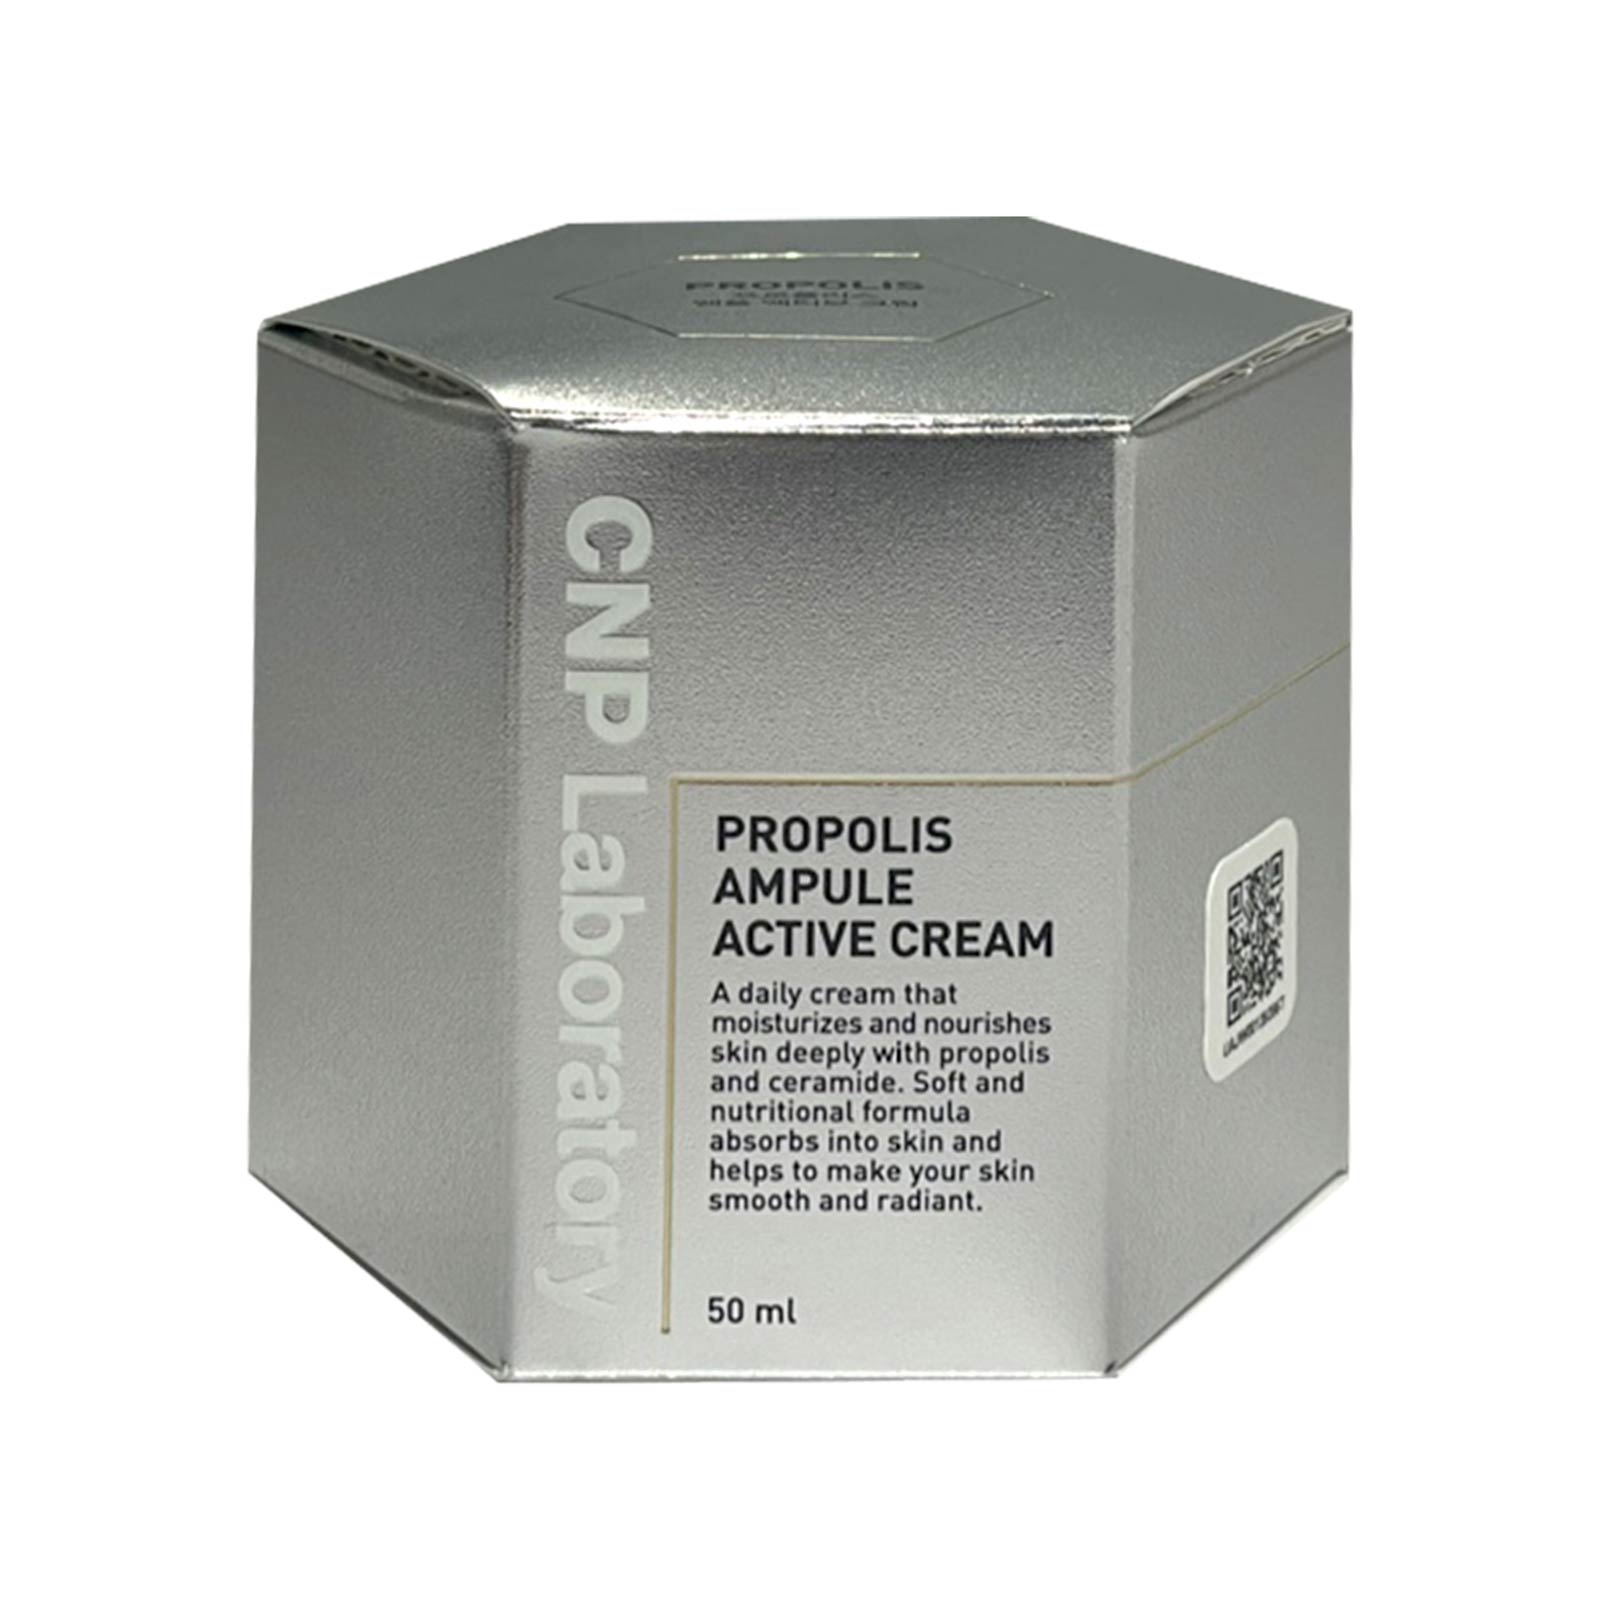 2/21新作!【フェイスクリーム】CNP Propolis Ampule Active Cream